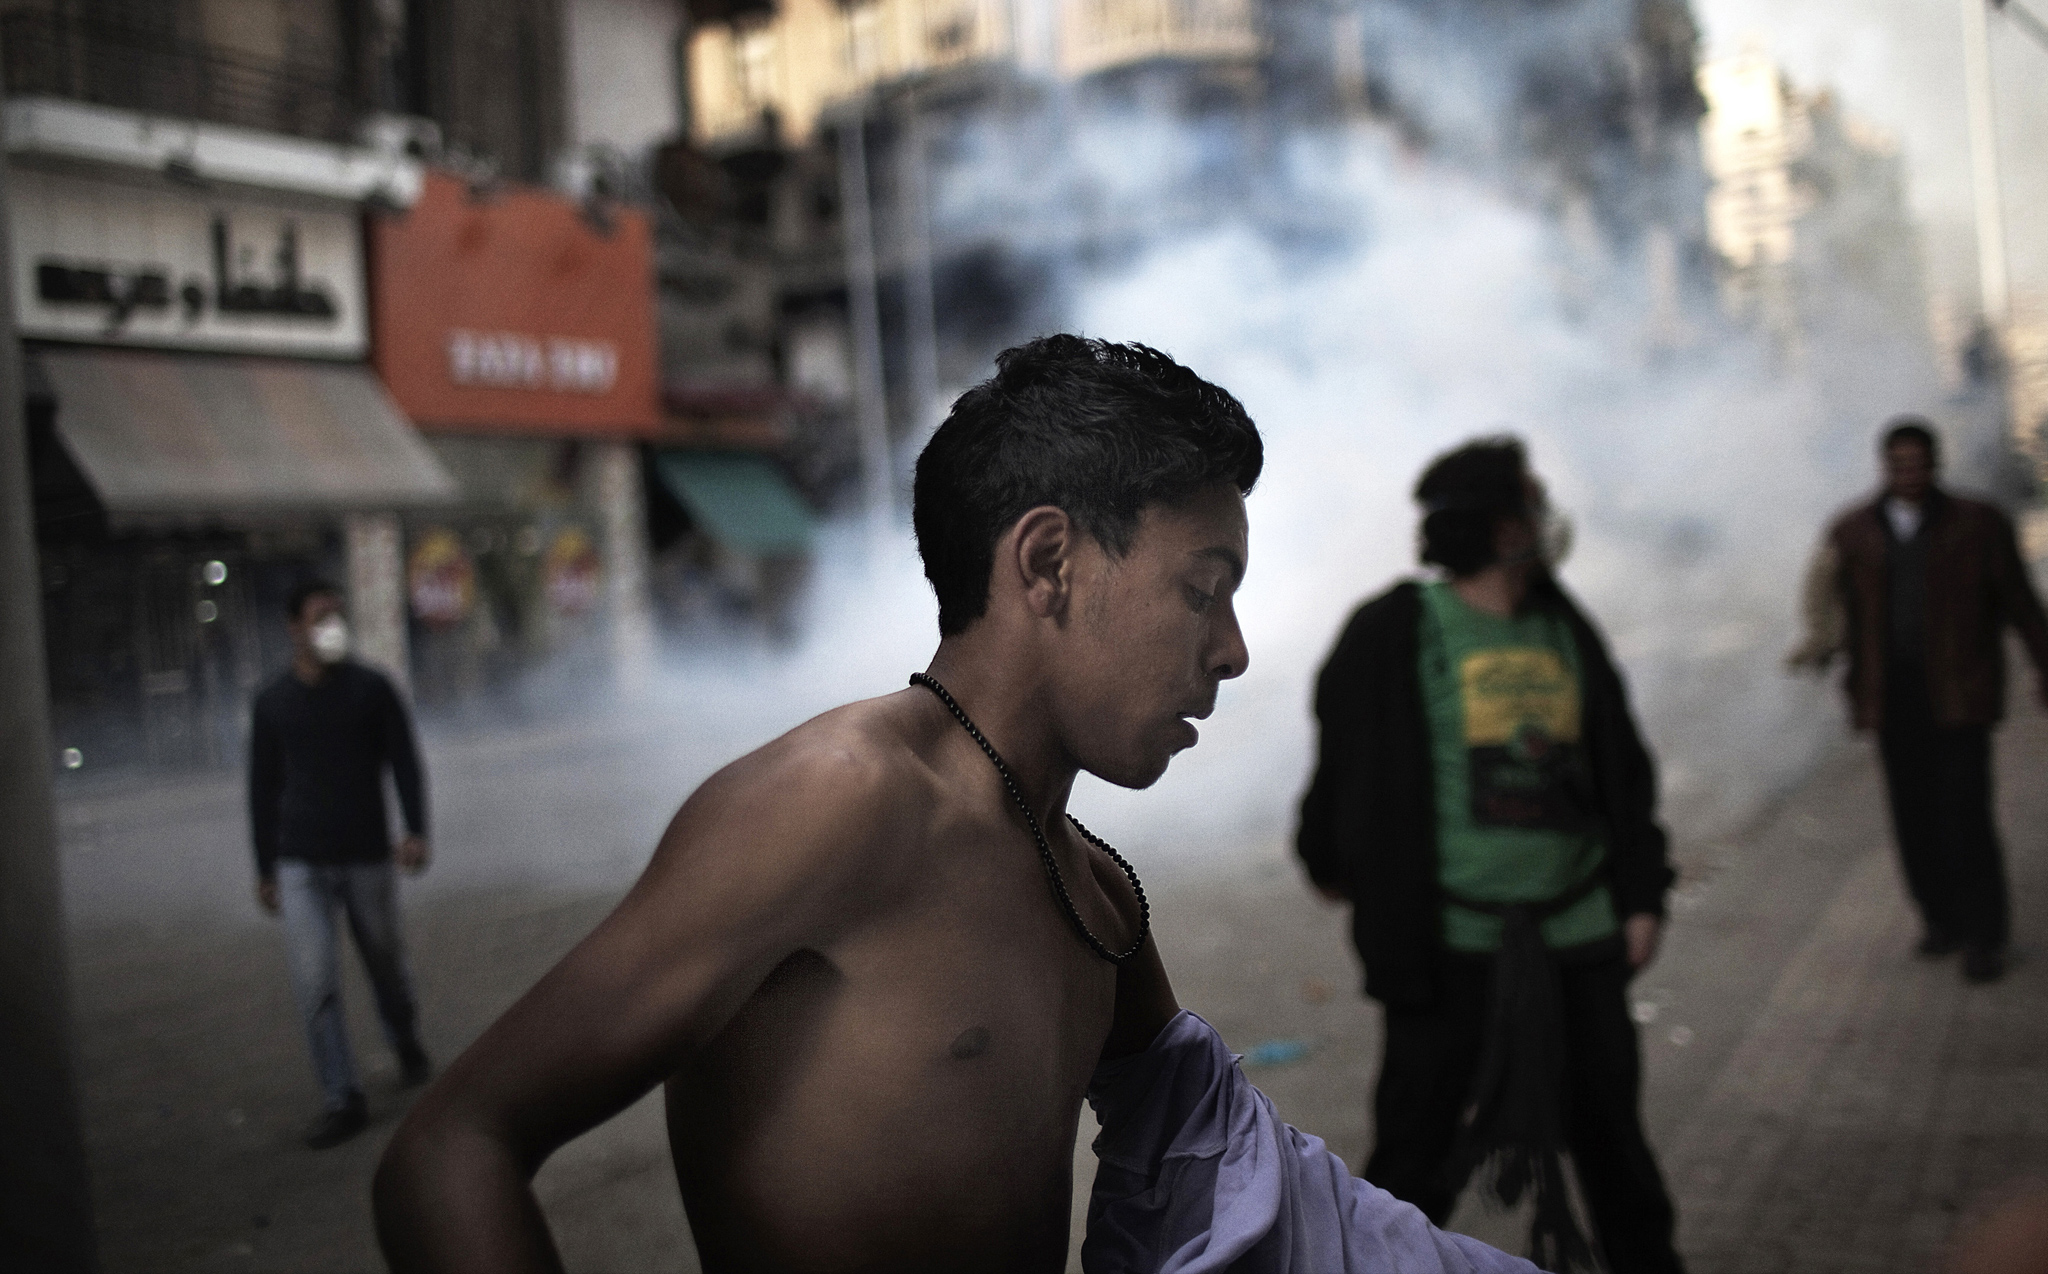  Le 28 janvier, de violents affrontements éclatent entre les forces de l'ordre et les manifestants qui ont bravé l'interdiction de manifester,<br>comme sur cette photo au Caire, près de la place Tahrir. (Crédit photo : AFP)